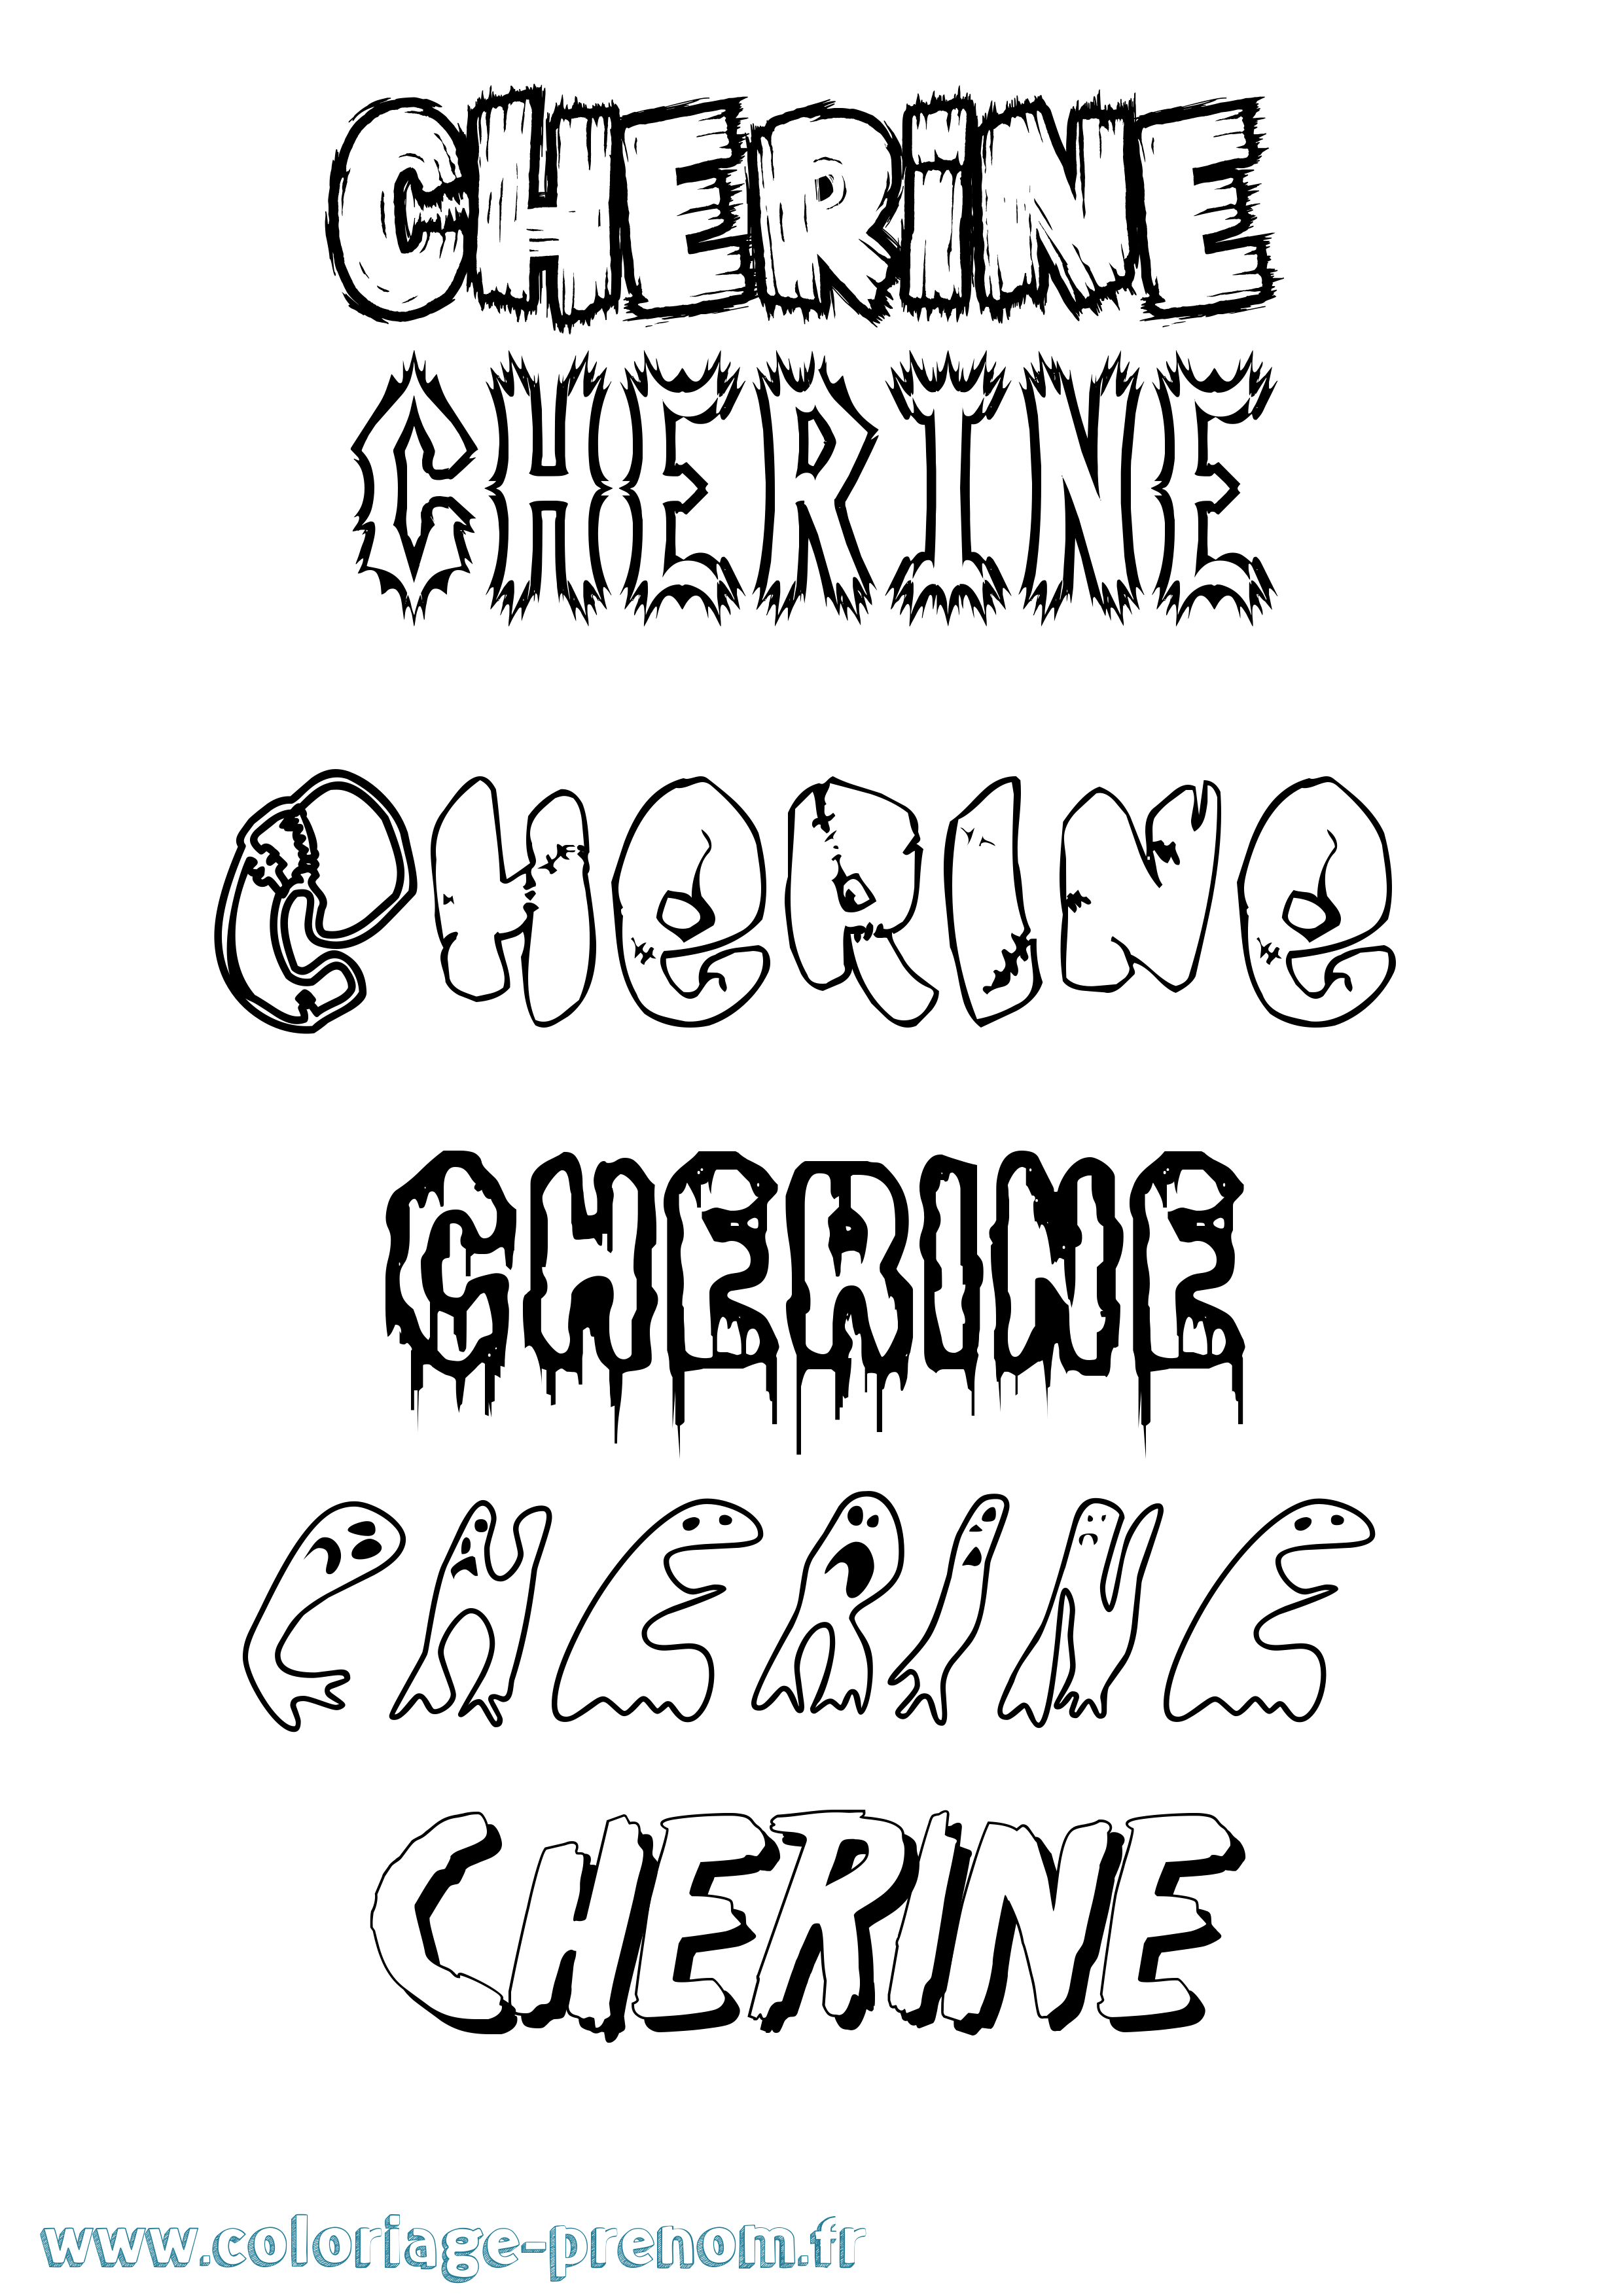 Coloriage du prénom Cherine : à Imprimer ou Télécharger facilement